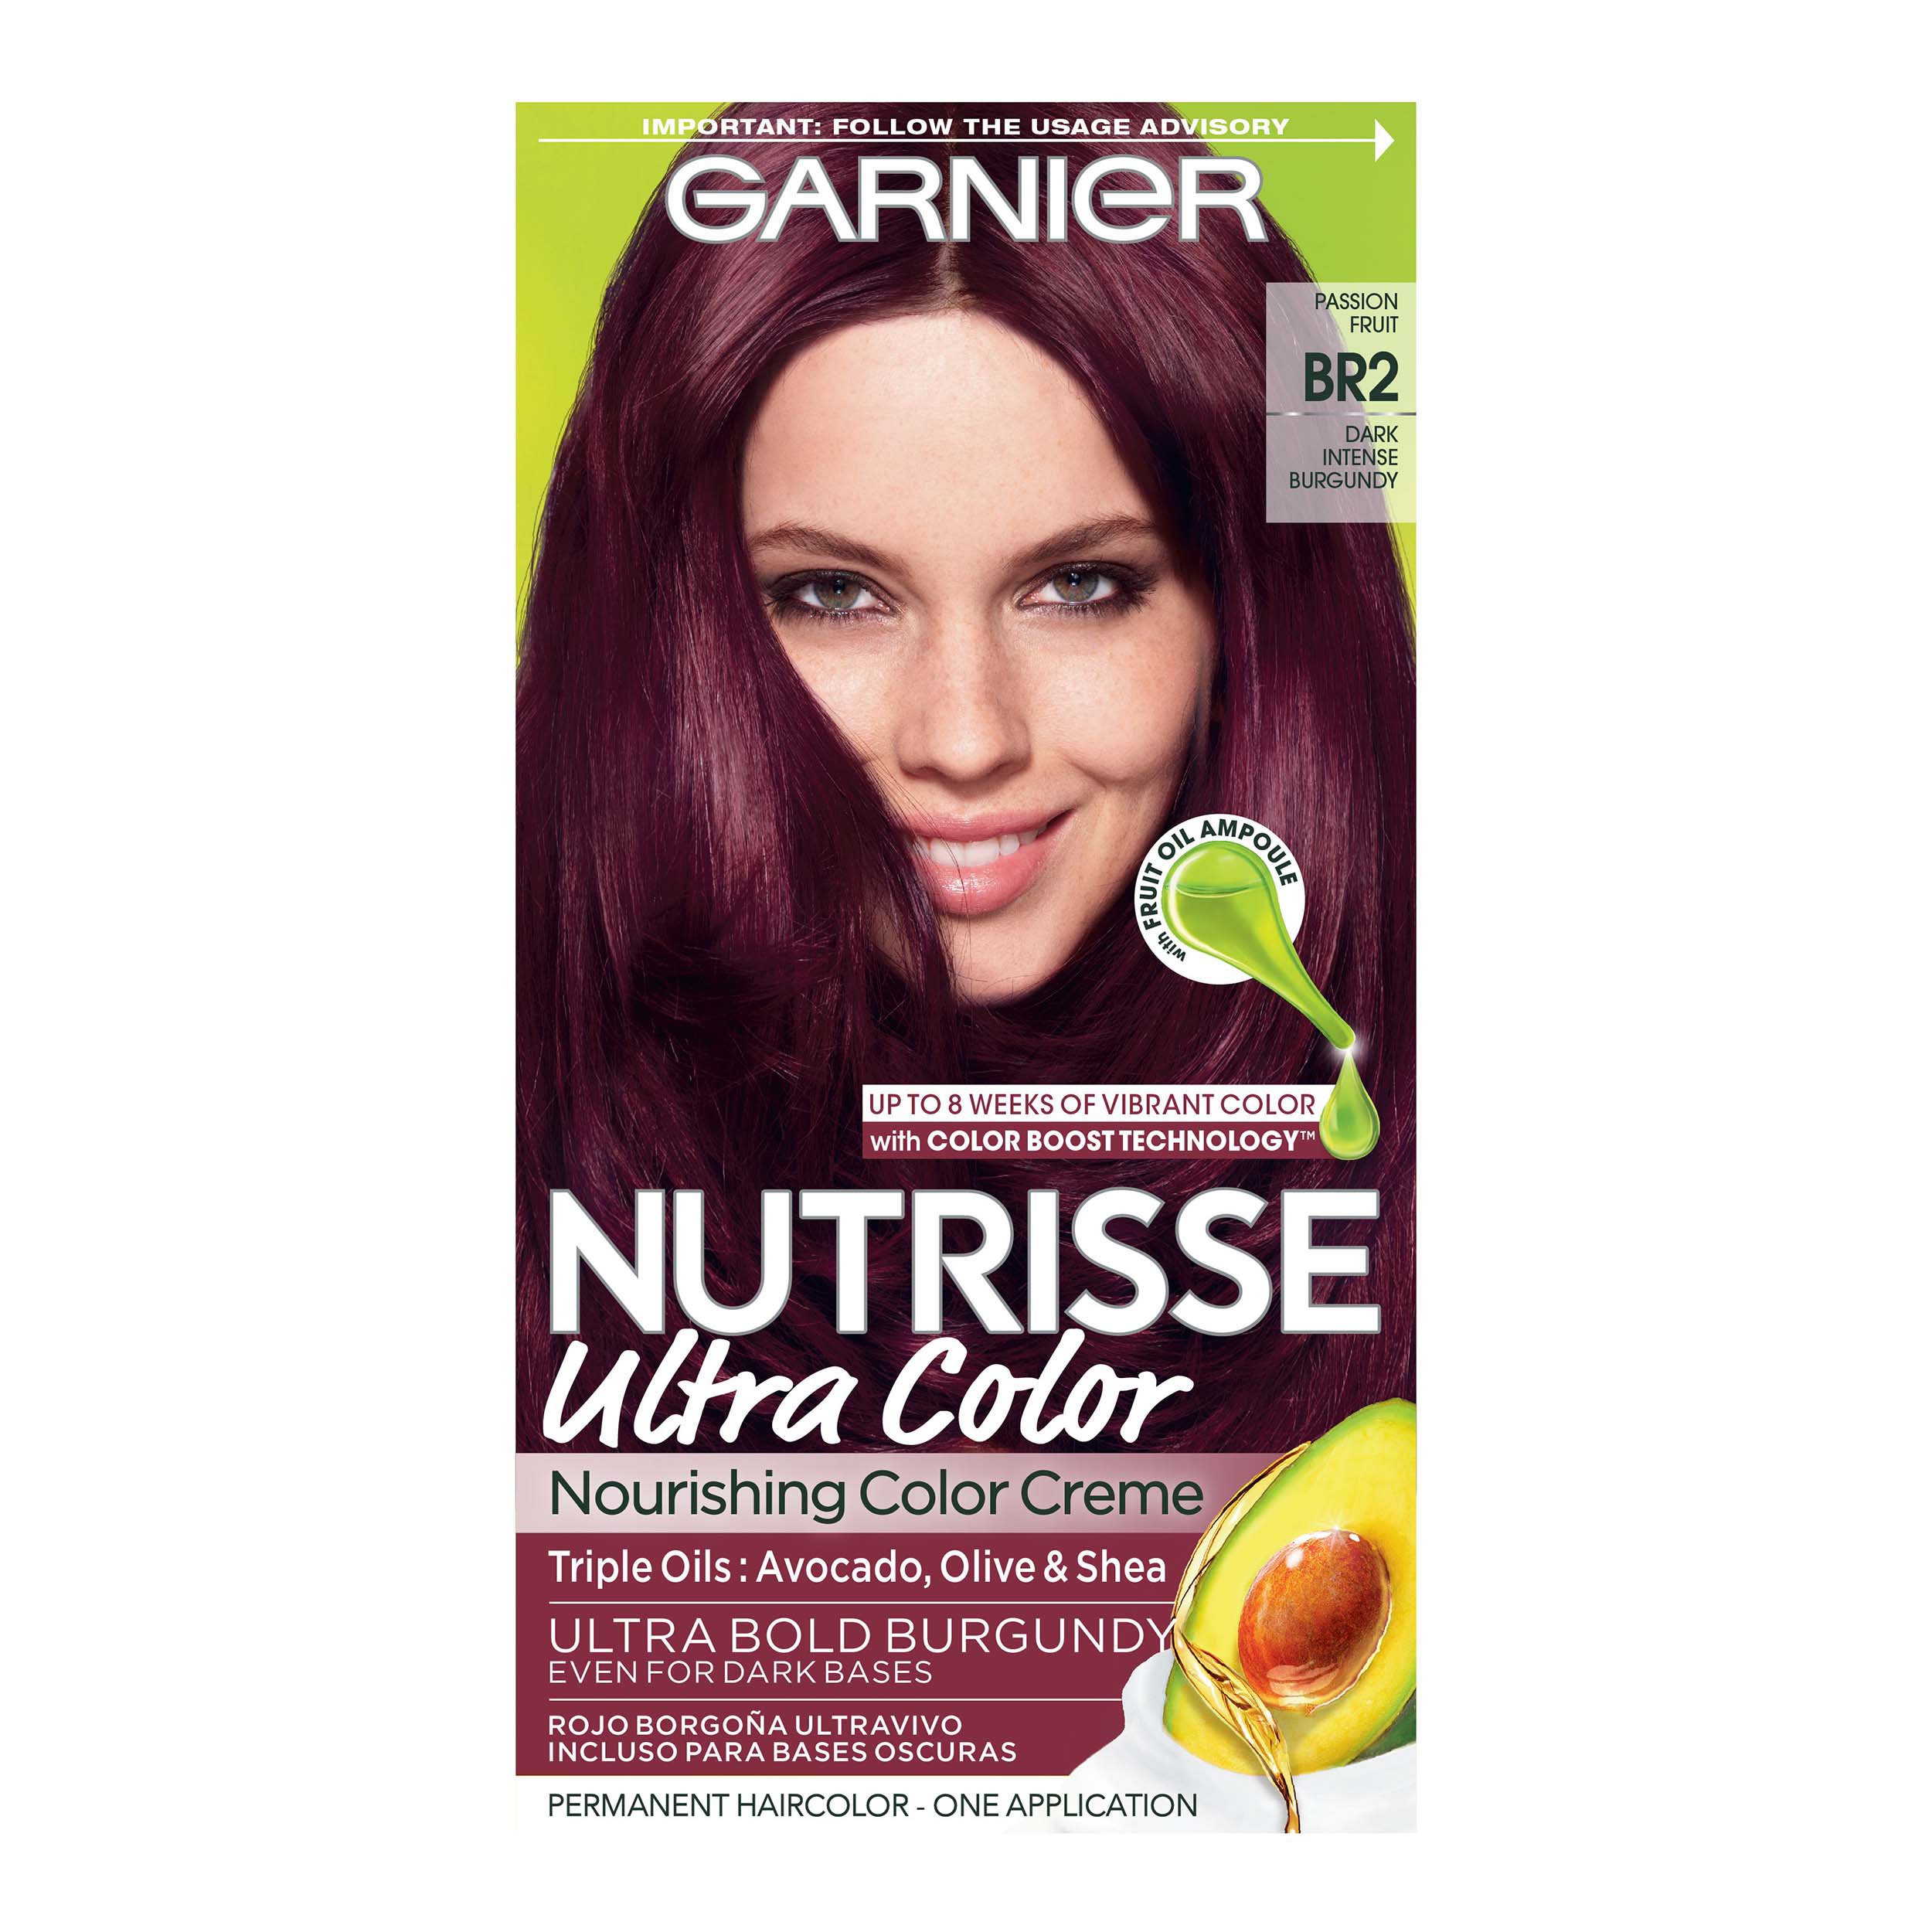 Akrobatik Evolve Blind Garnier Nutrisse Ultra Color Nourishing Bold Permanent Hair Color Creme BR2  Dark Intense Burgundy - Shop Hair Color at H-E-B